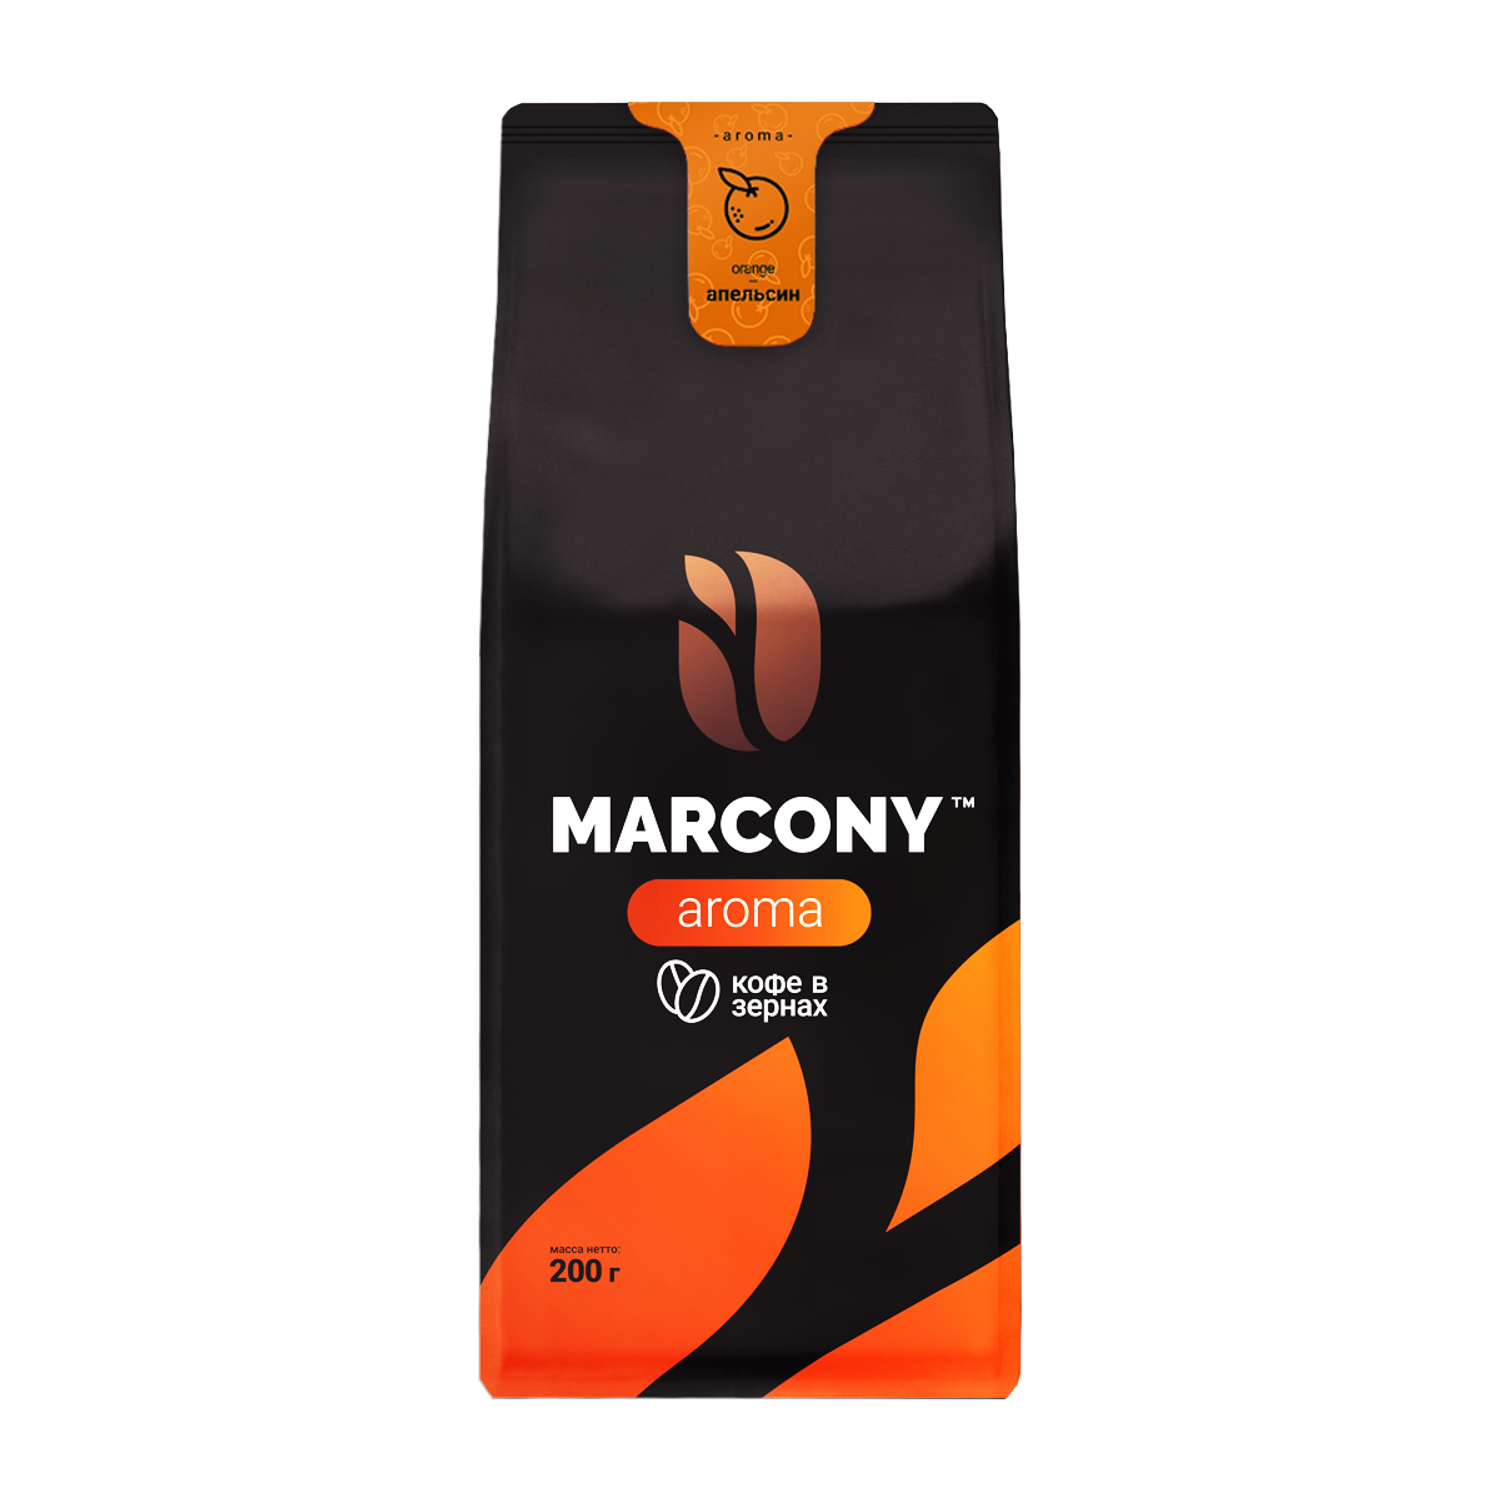 Кофе в зернах Marcony Aroma со вкусом Апельсина 200 г - фото 1